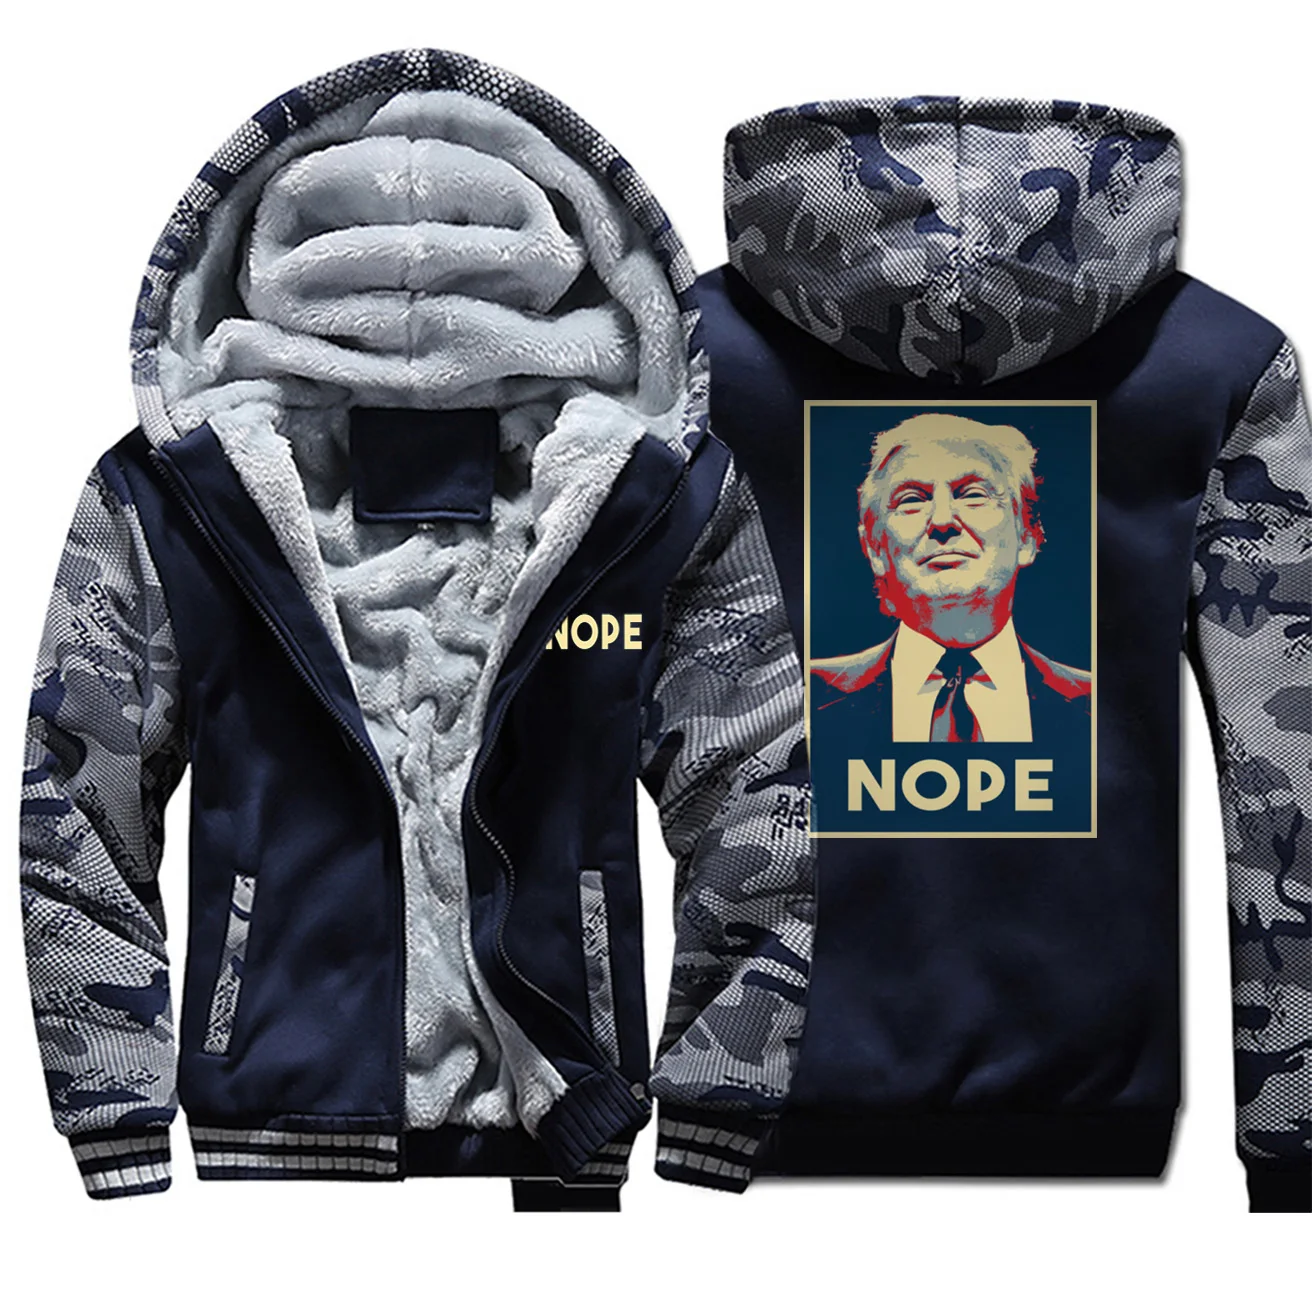 Le président Trump 2020 hommes épaissir Sweat à capuche hiver polaire manteau chaud Pull Gilet